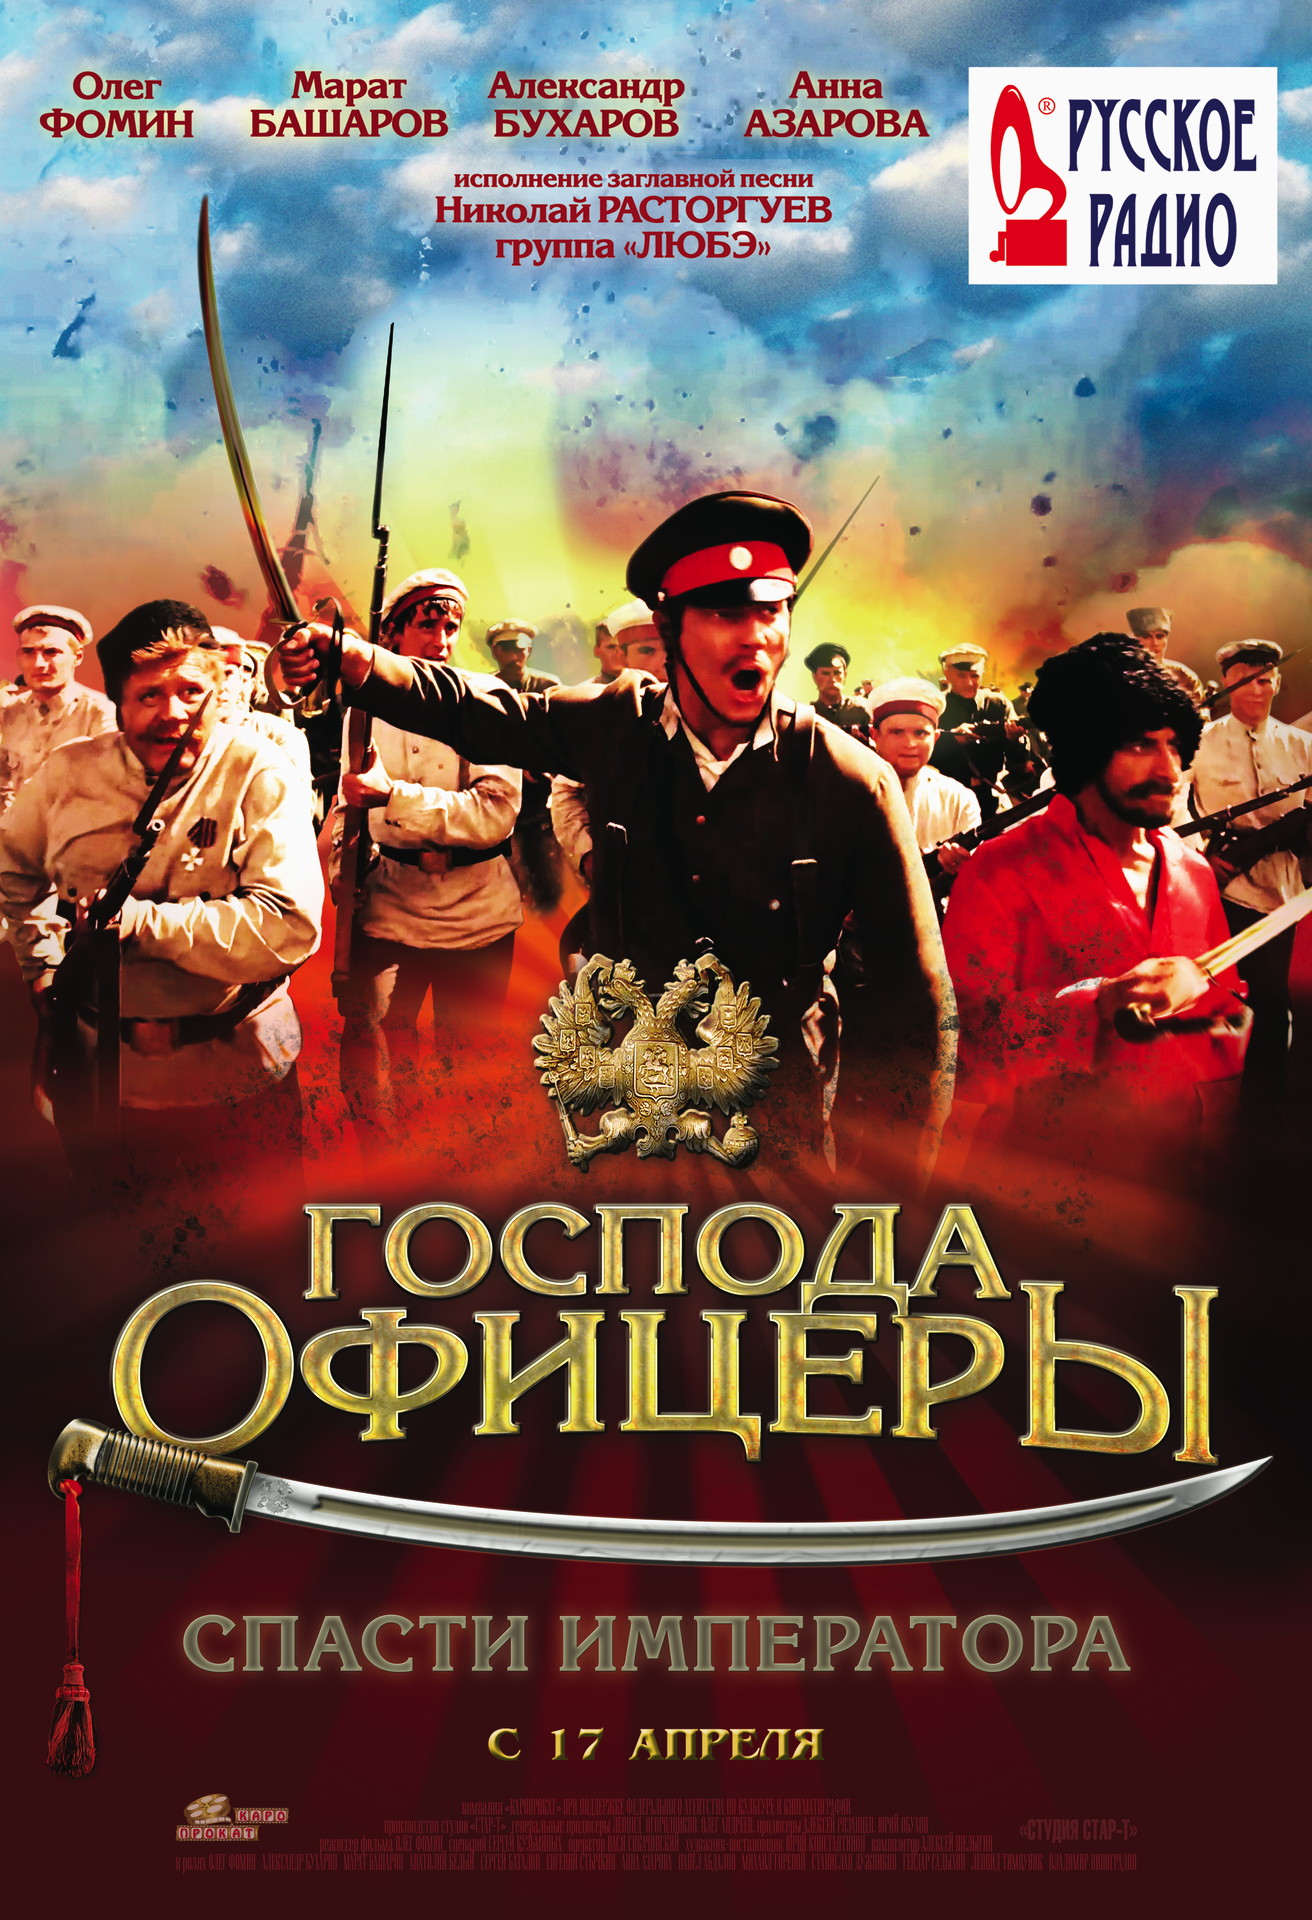 Фильм «Господа Офицеры: Спасти Императора» (2008) — Трейлеры, Дата.